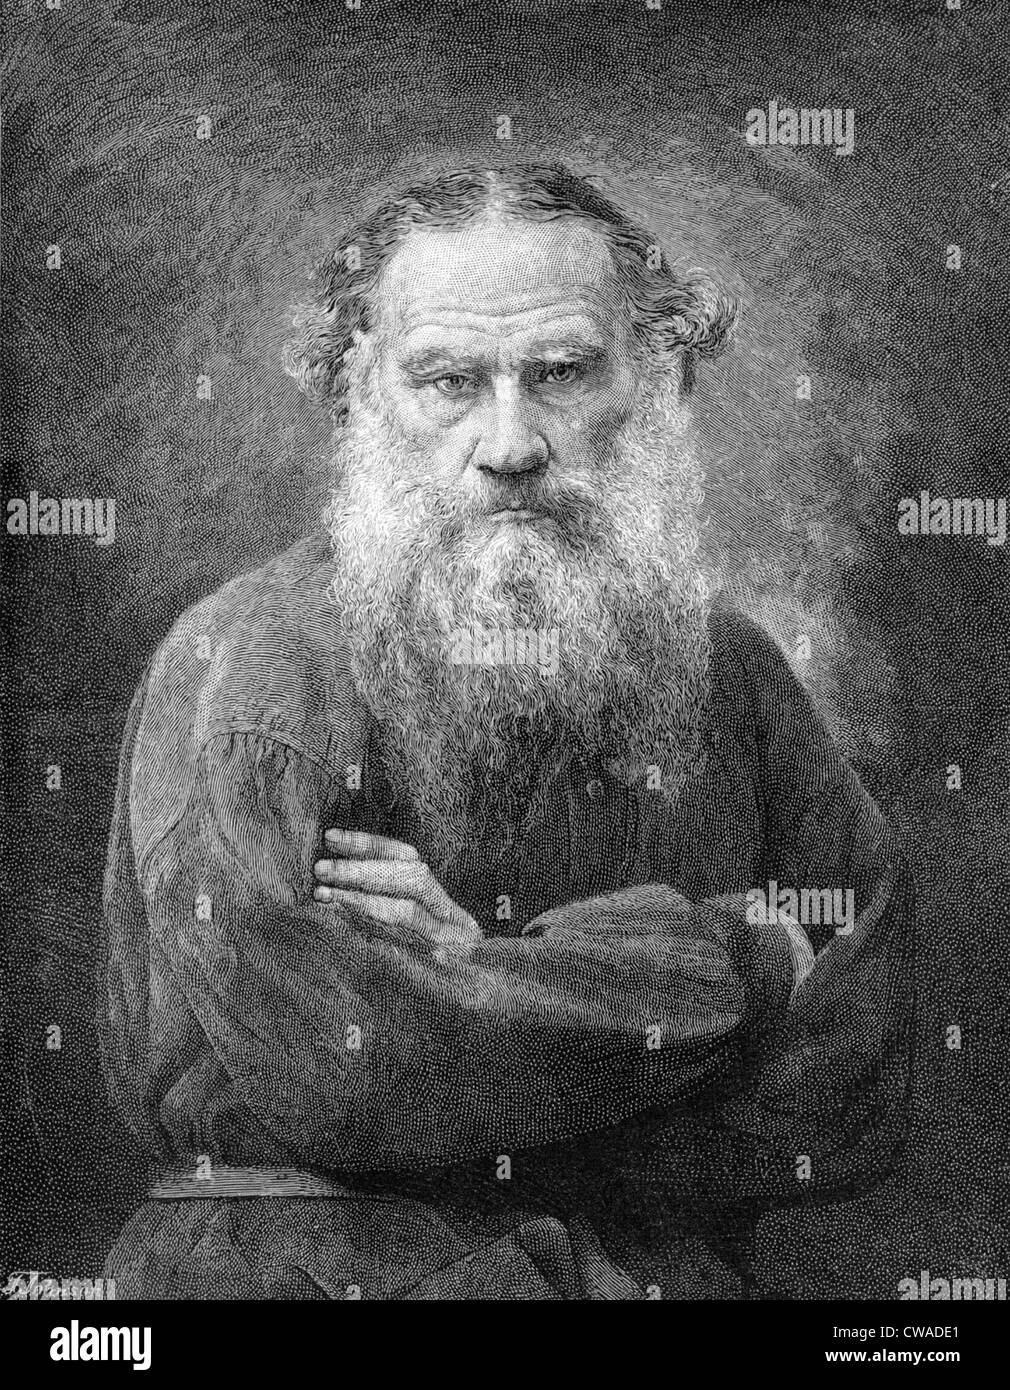 Léon Tolstoï (1828-1910), romancier russe auteur de "Guerre et paix" et "Anna Karénine" gravure Portrait. à partir de 1887s. Banque D'Images